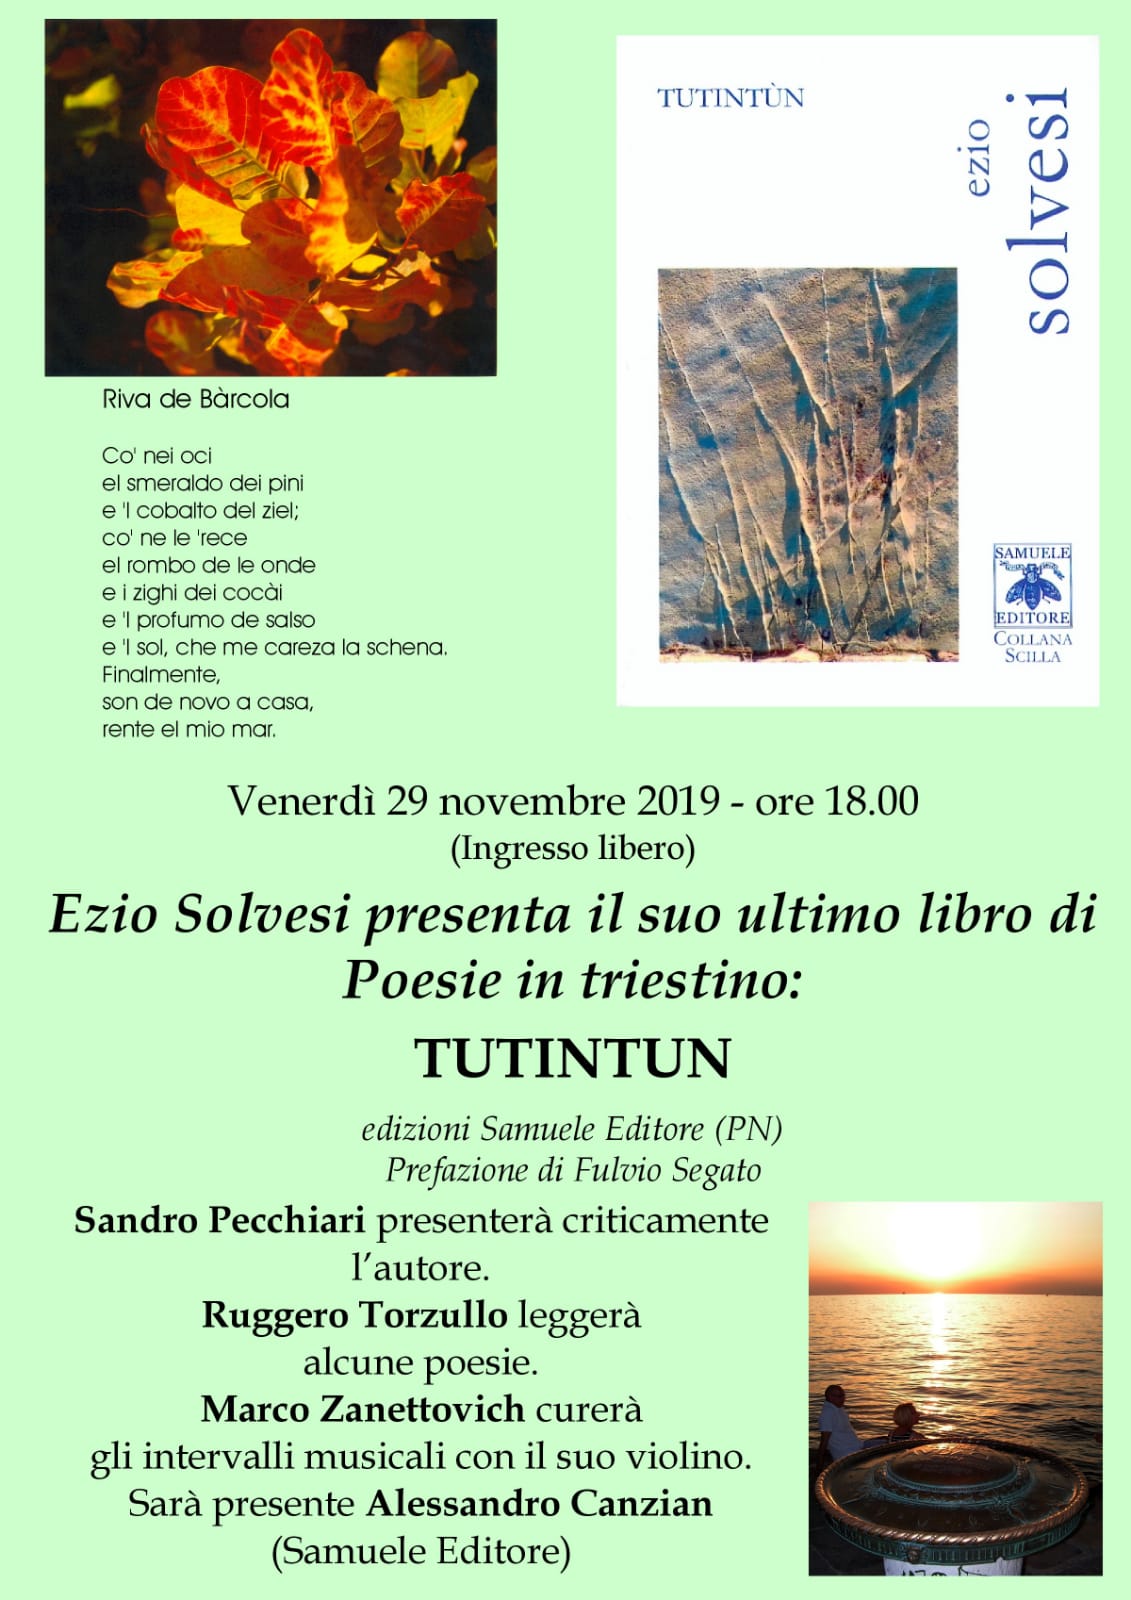 Al momento stai visualizzando Tutintun a Trieste – 29 novembre